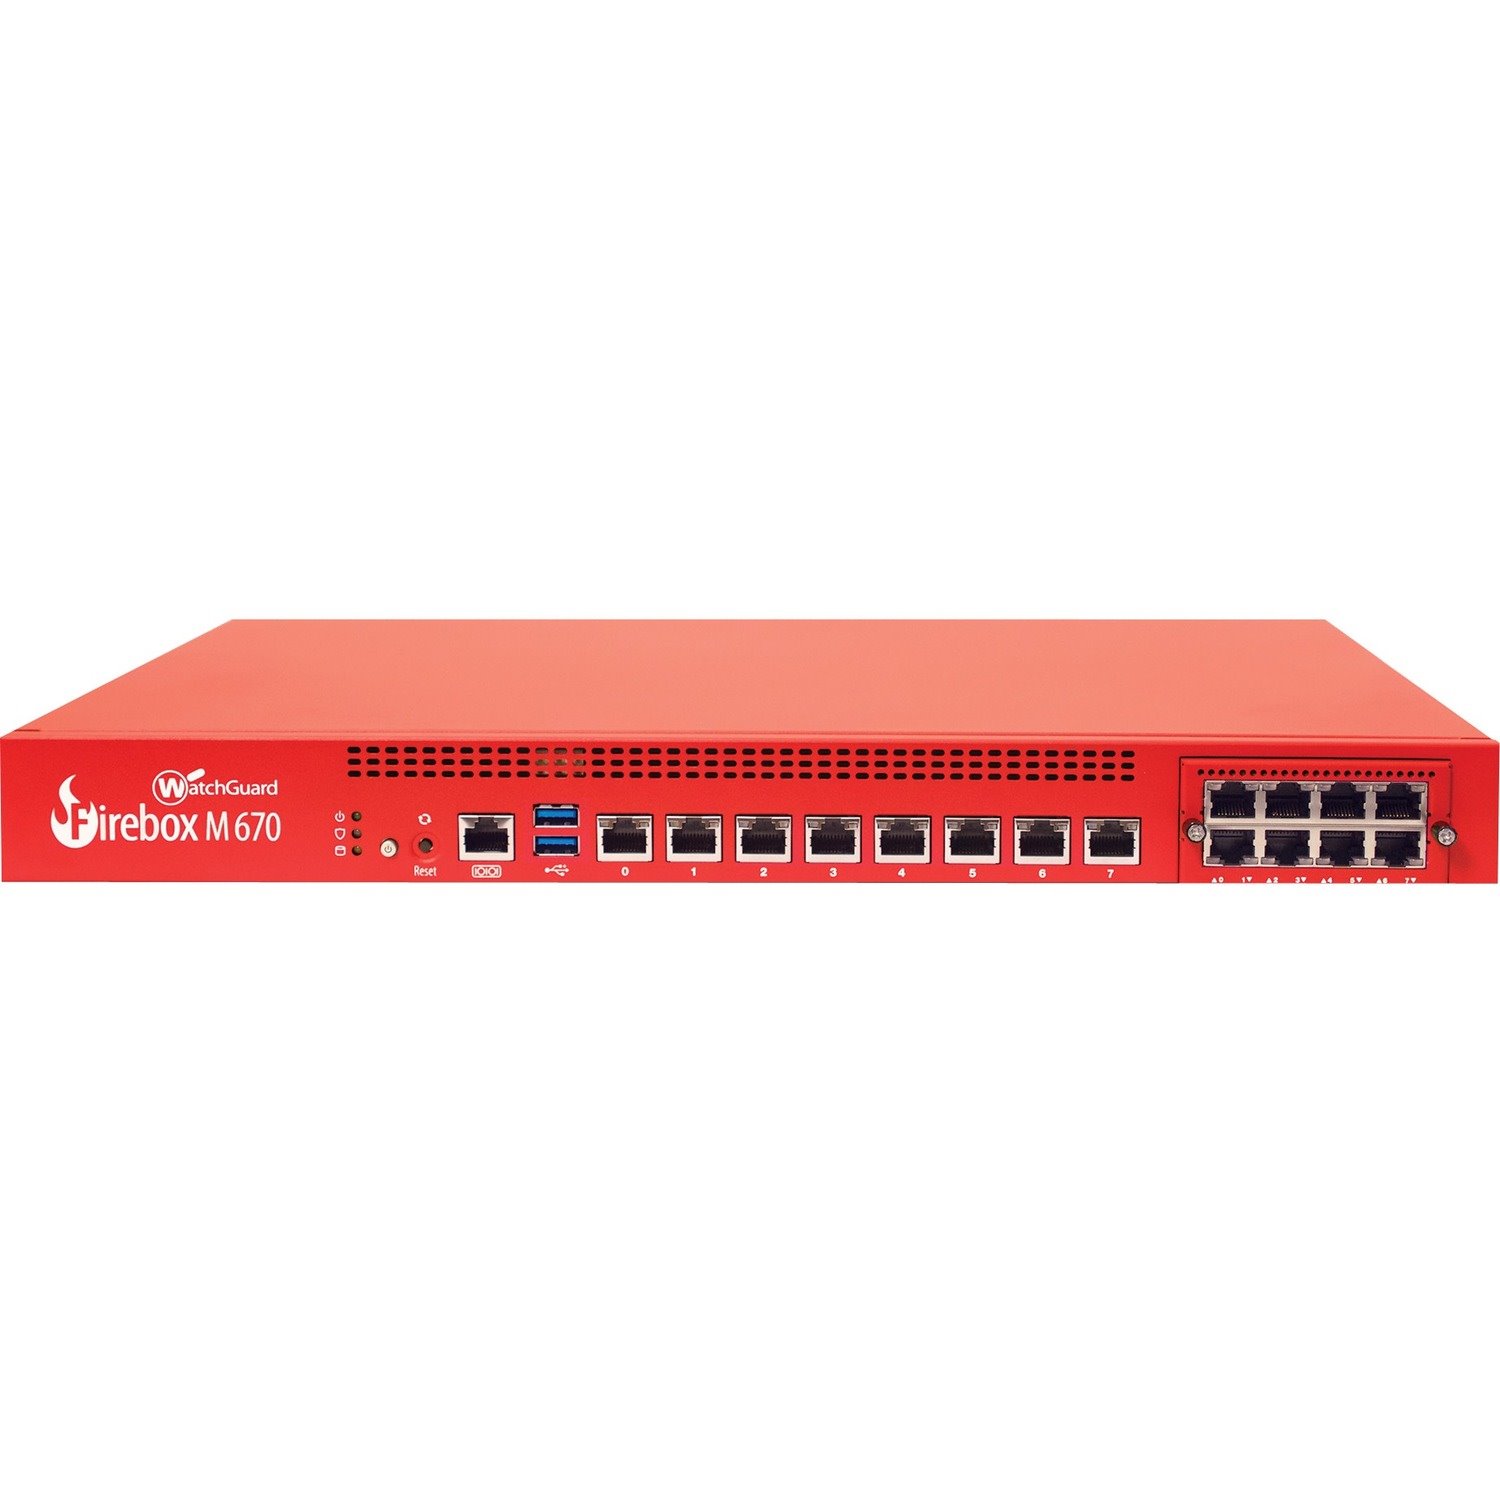 WatchGuard Firebox M670 Network Security/Firewall Appliance